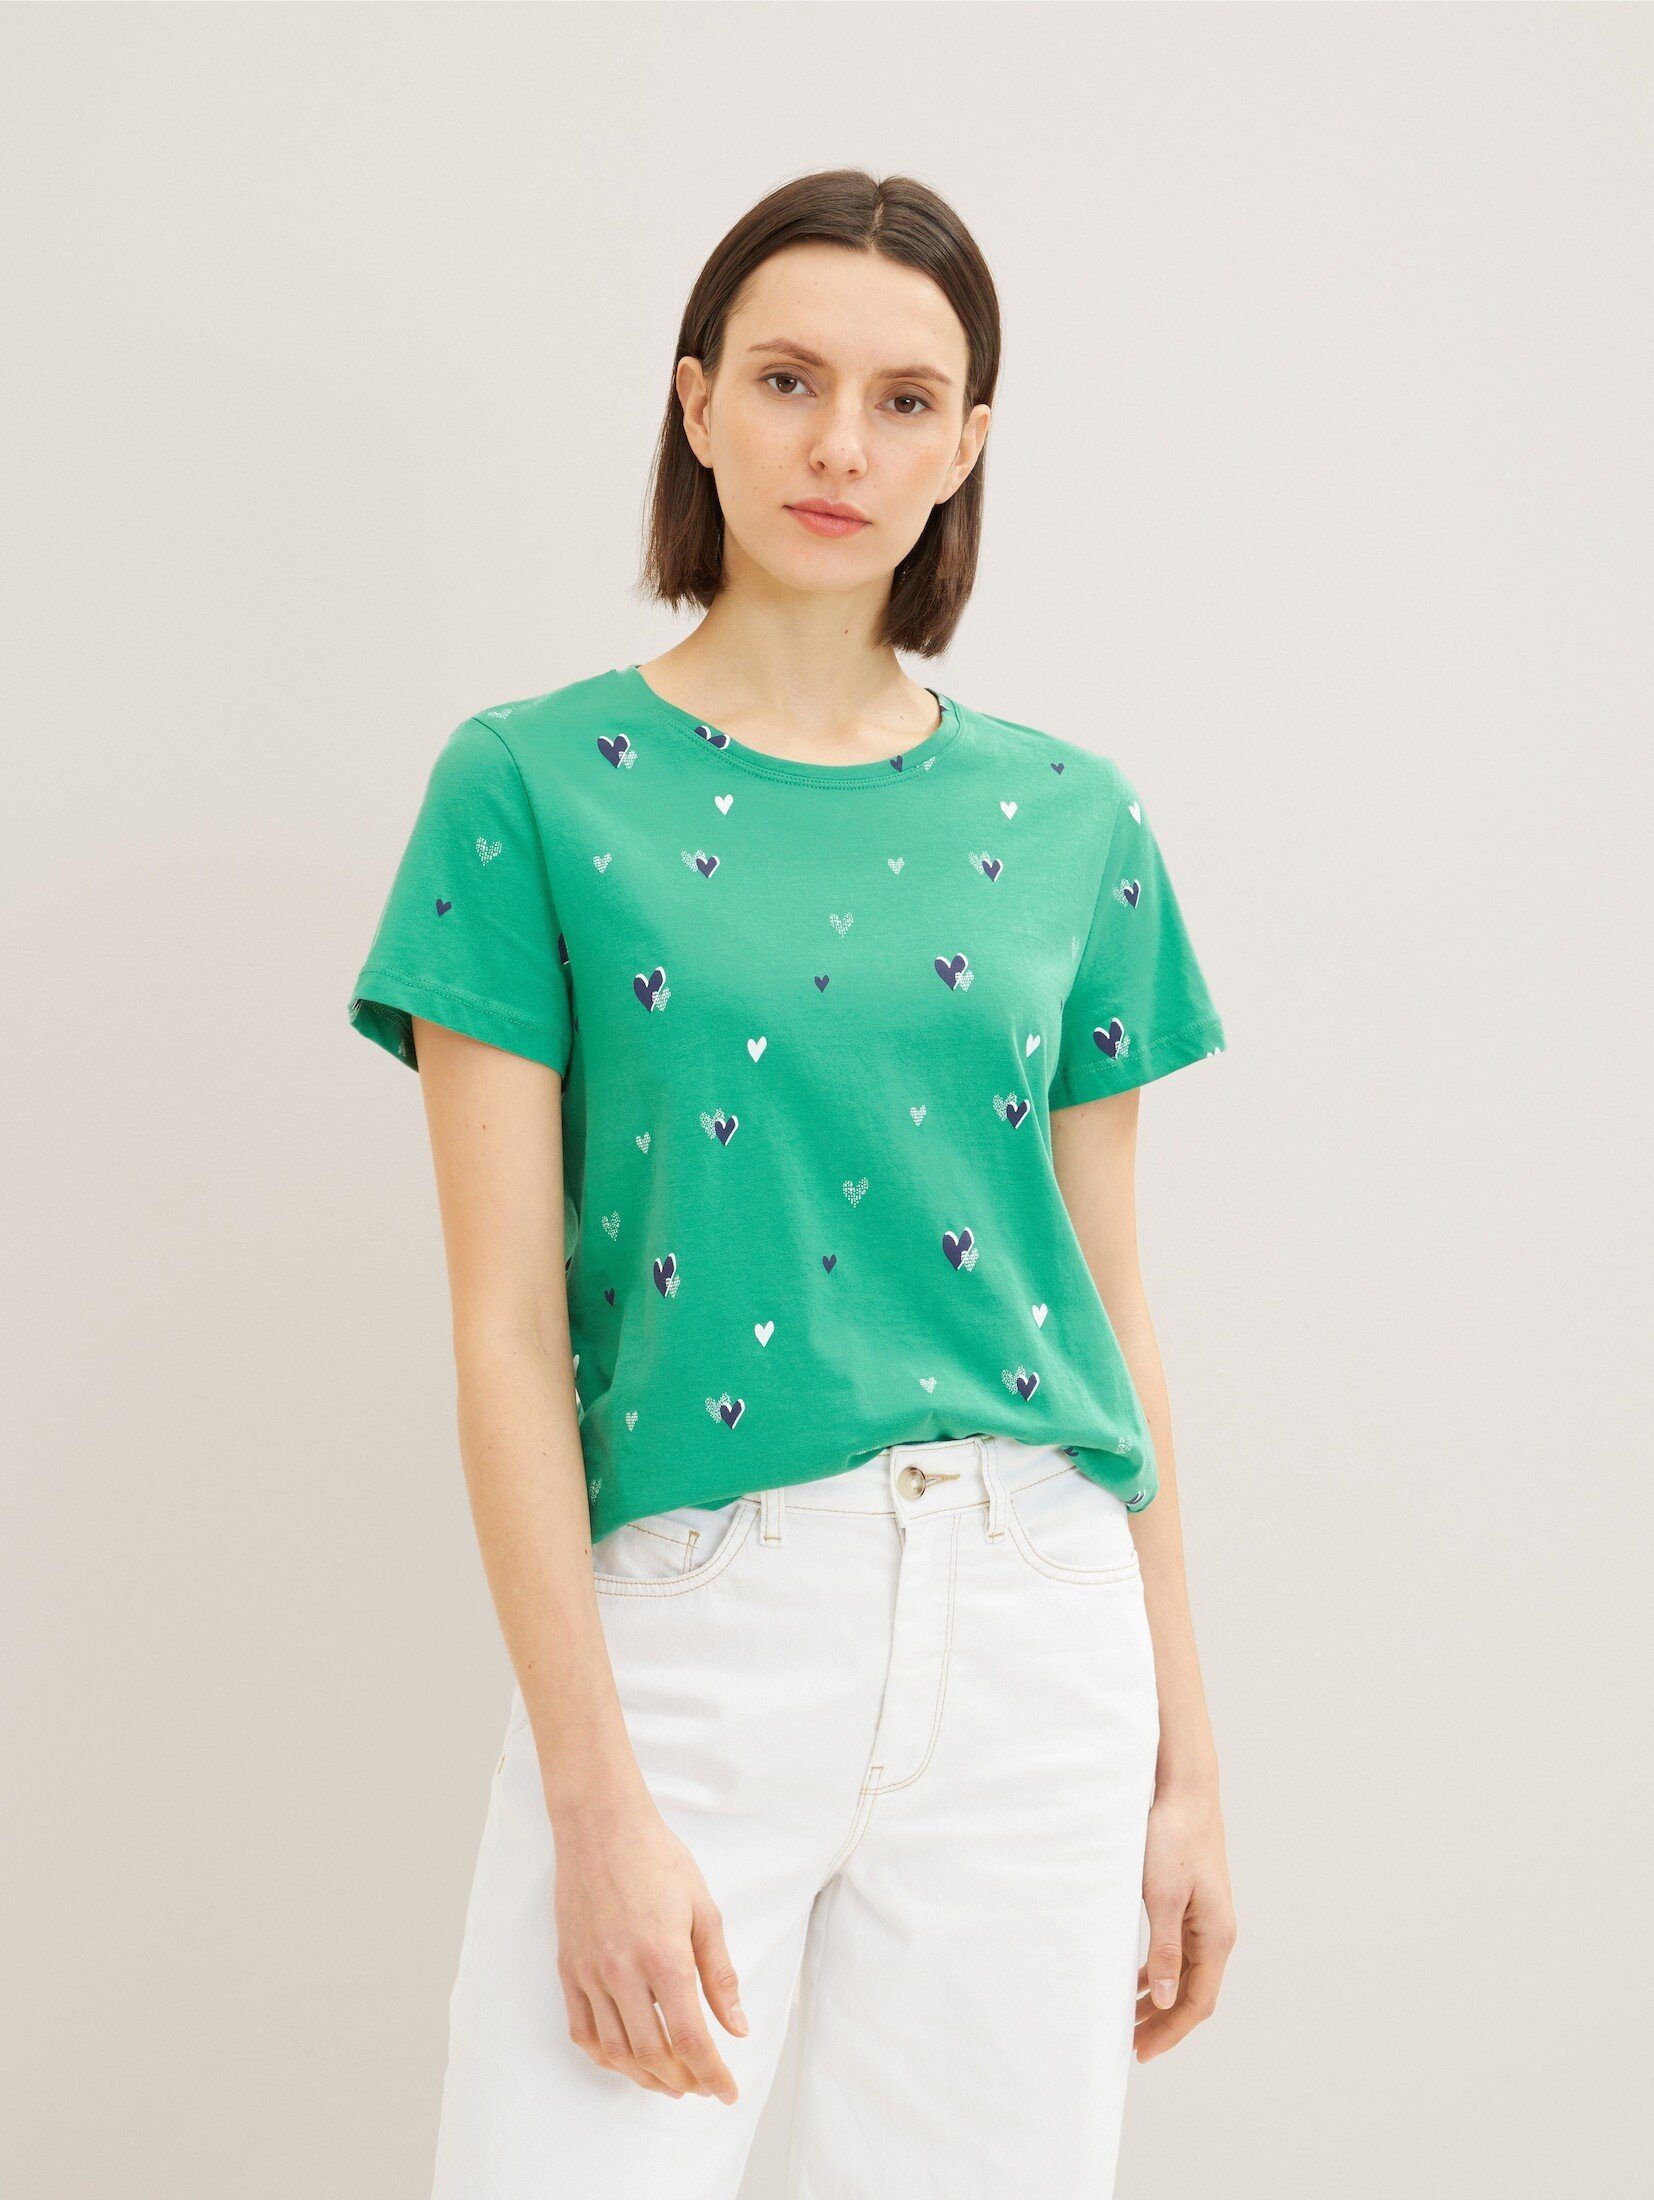 green T-Shirt T-Shirt Print navy heart TOM design TAILOR mit